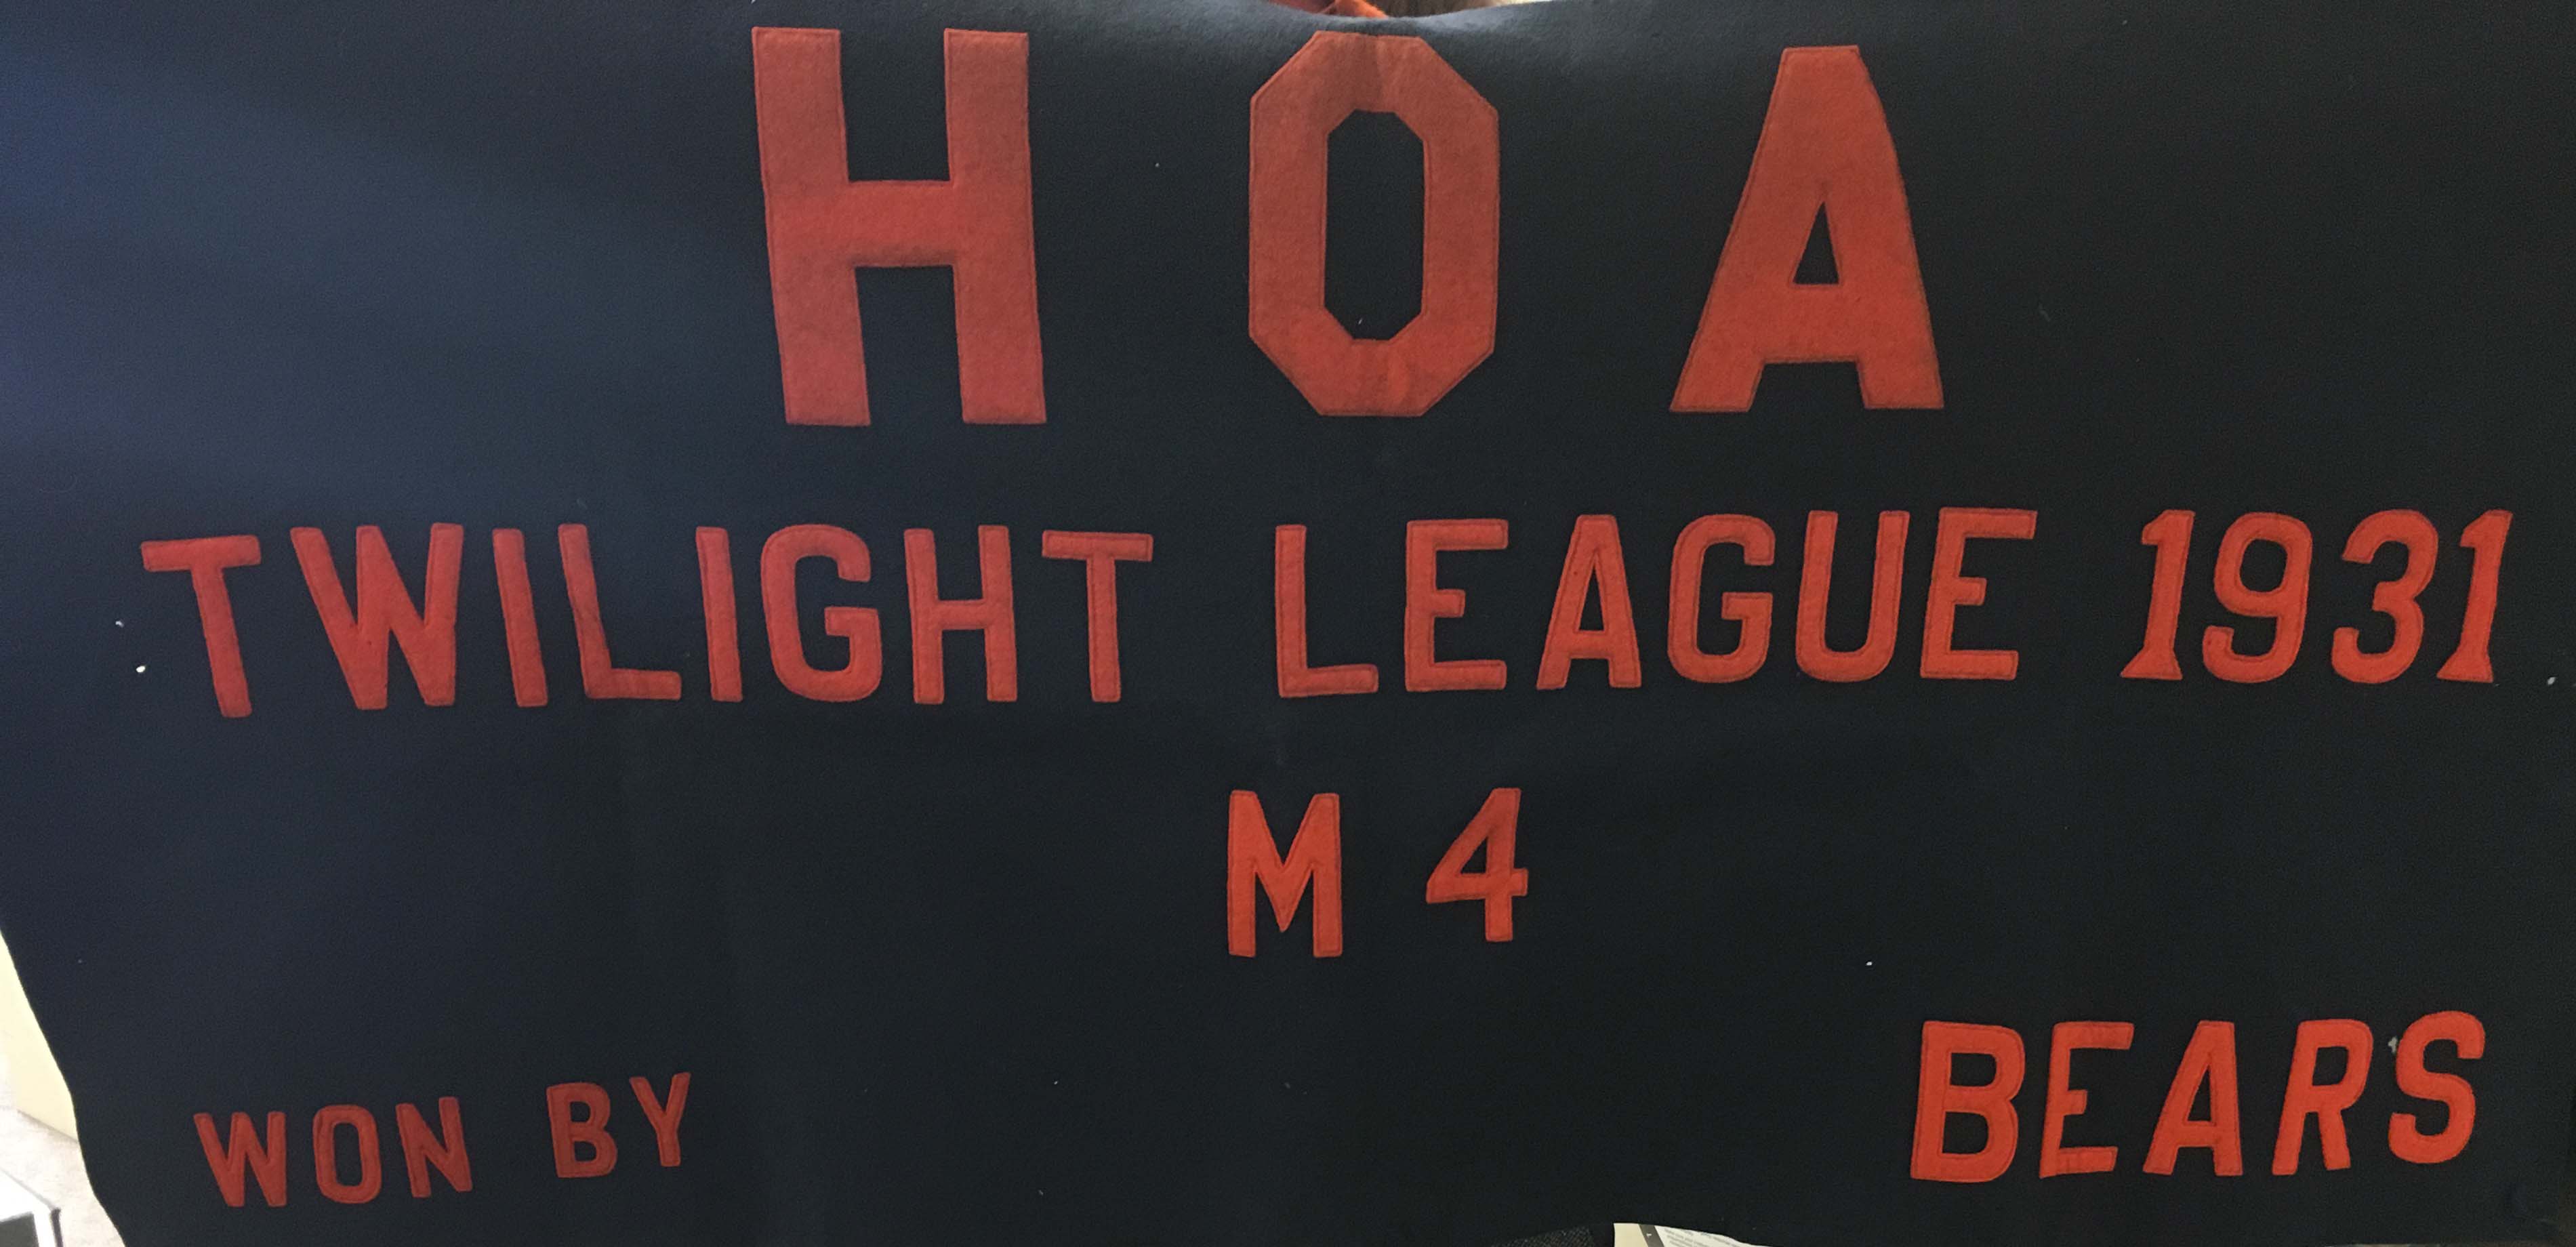 HOA Twilight League 1931 Banner